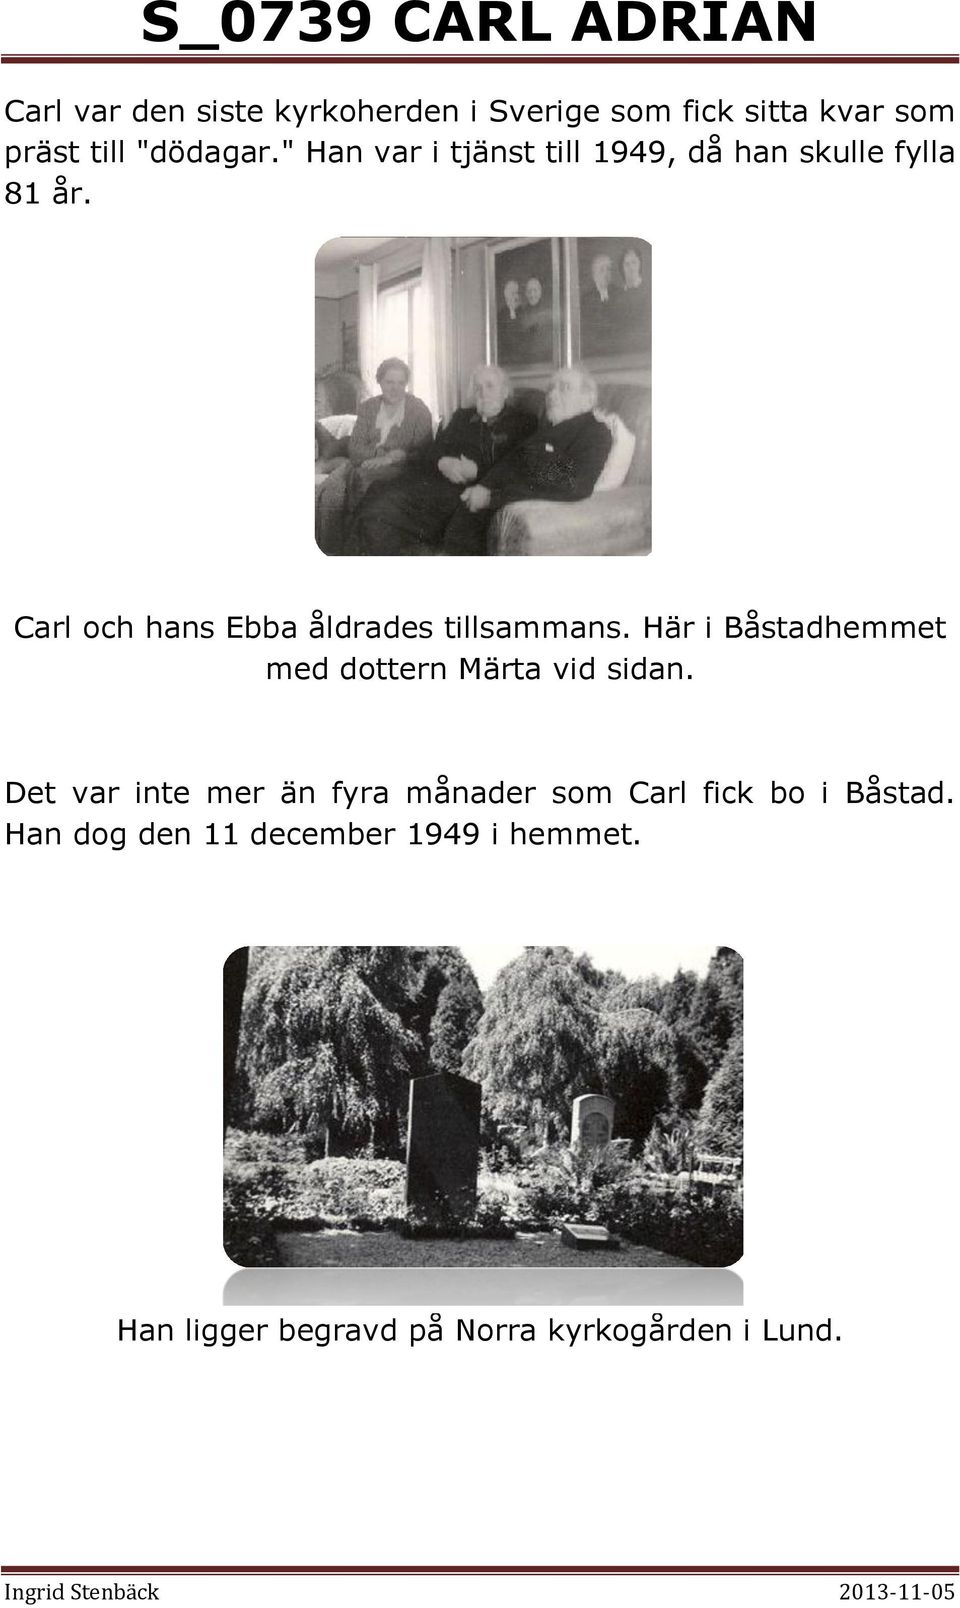 Carl och hans Ebba åldrades tillsammans. Här i Båstadhemmet med dottern Märta vid sidan.